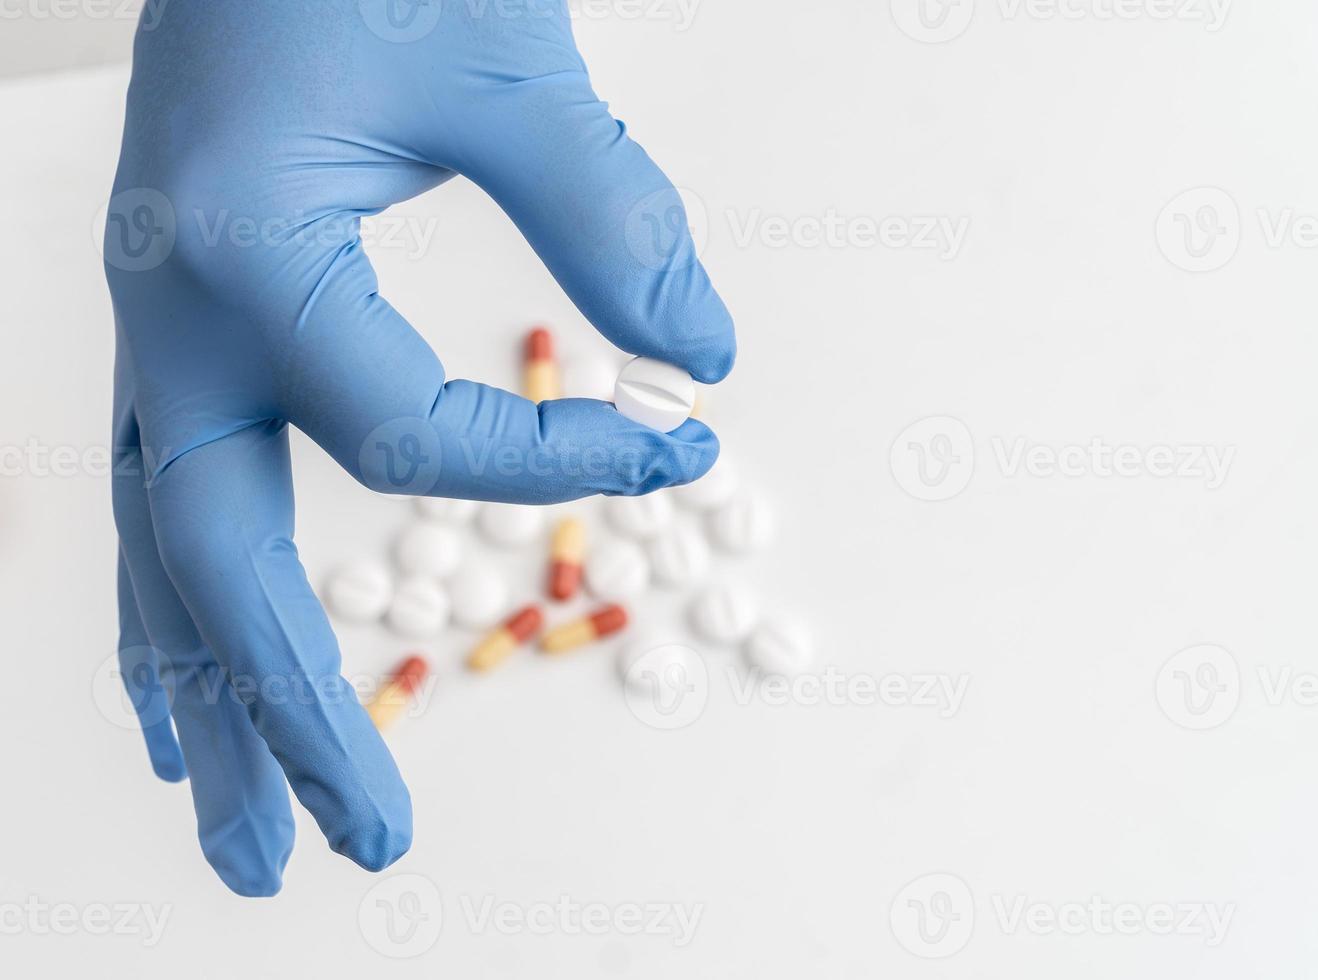 medicatie pillen vasthouden met chirurgische handschoen foto